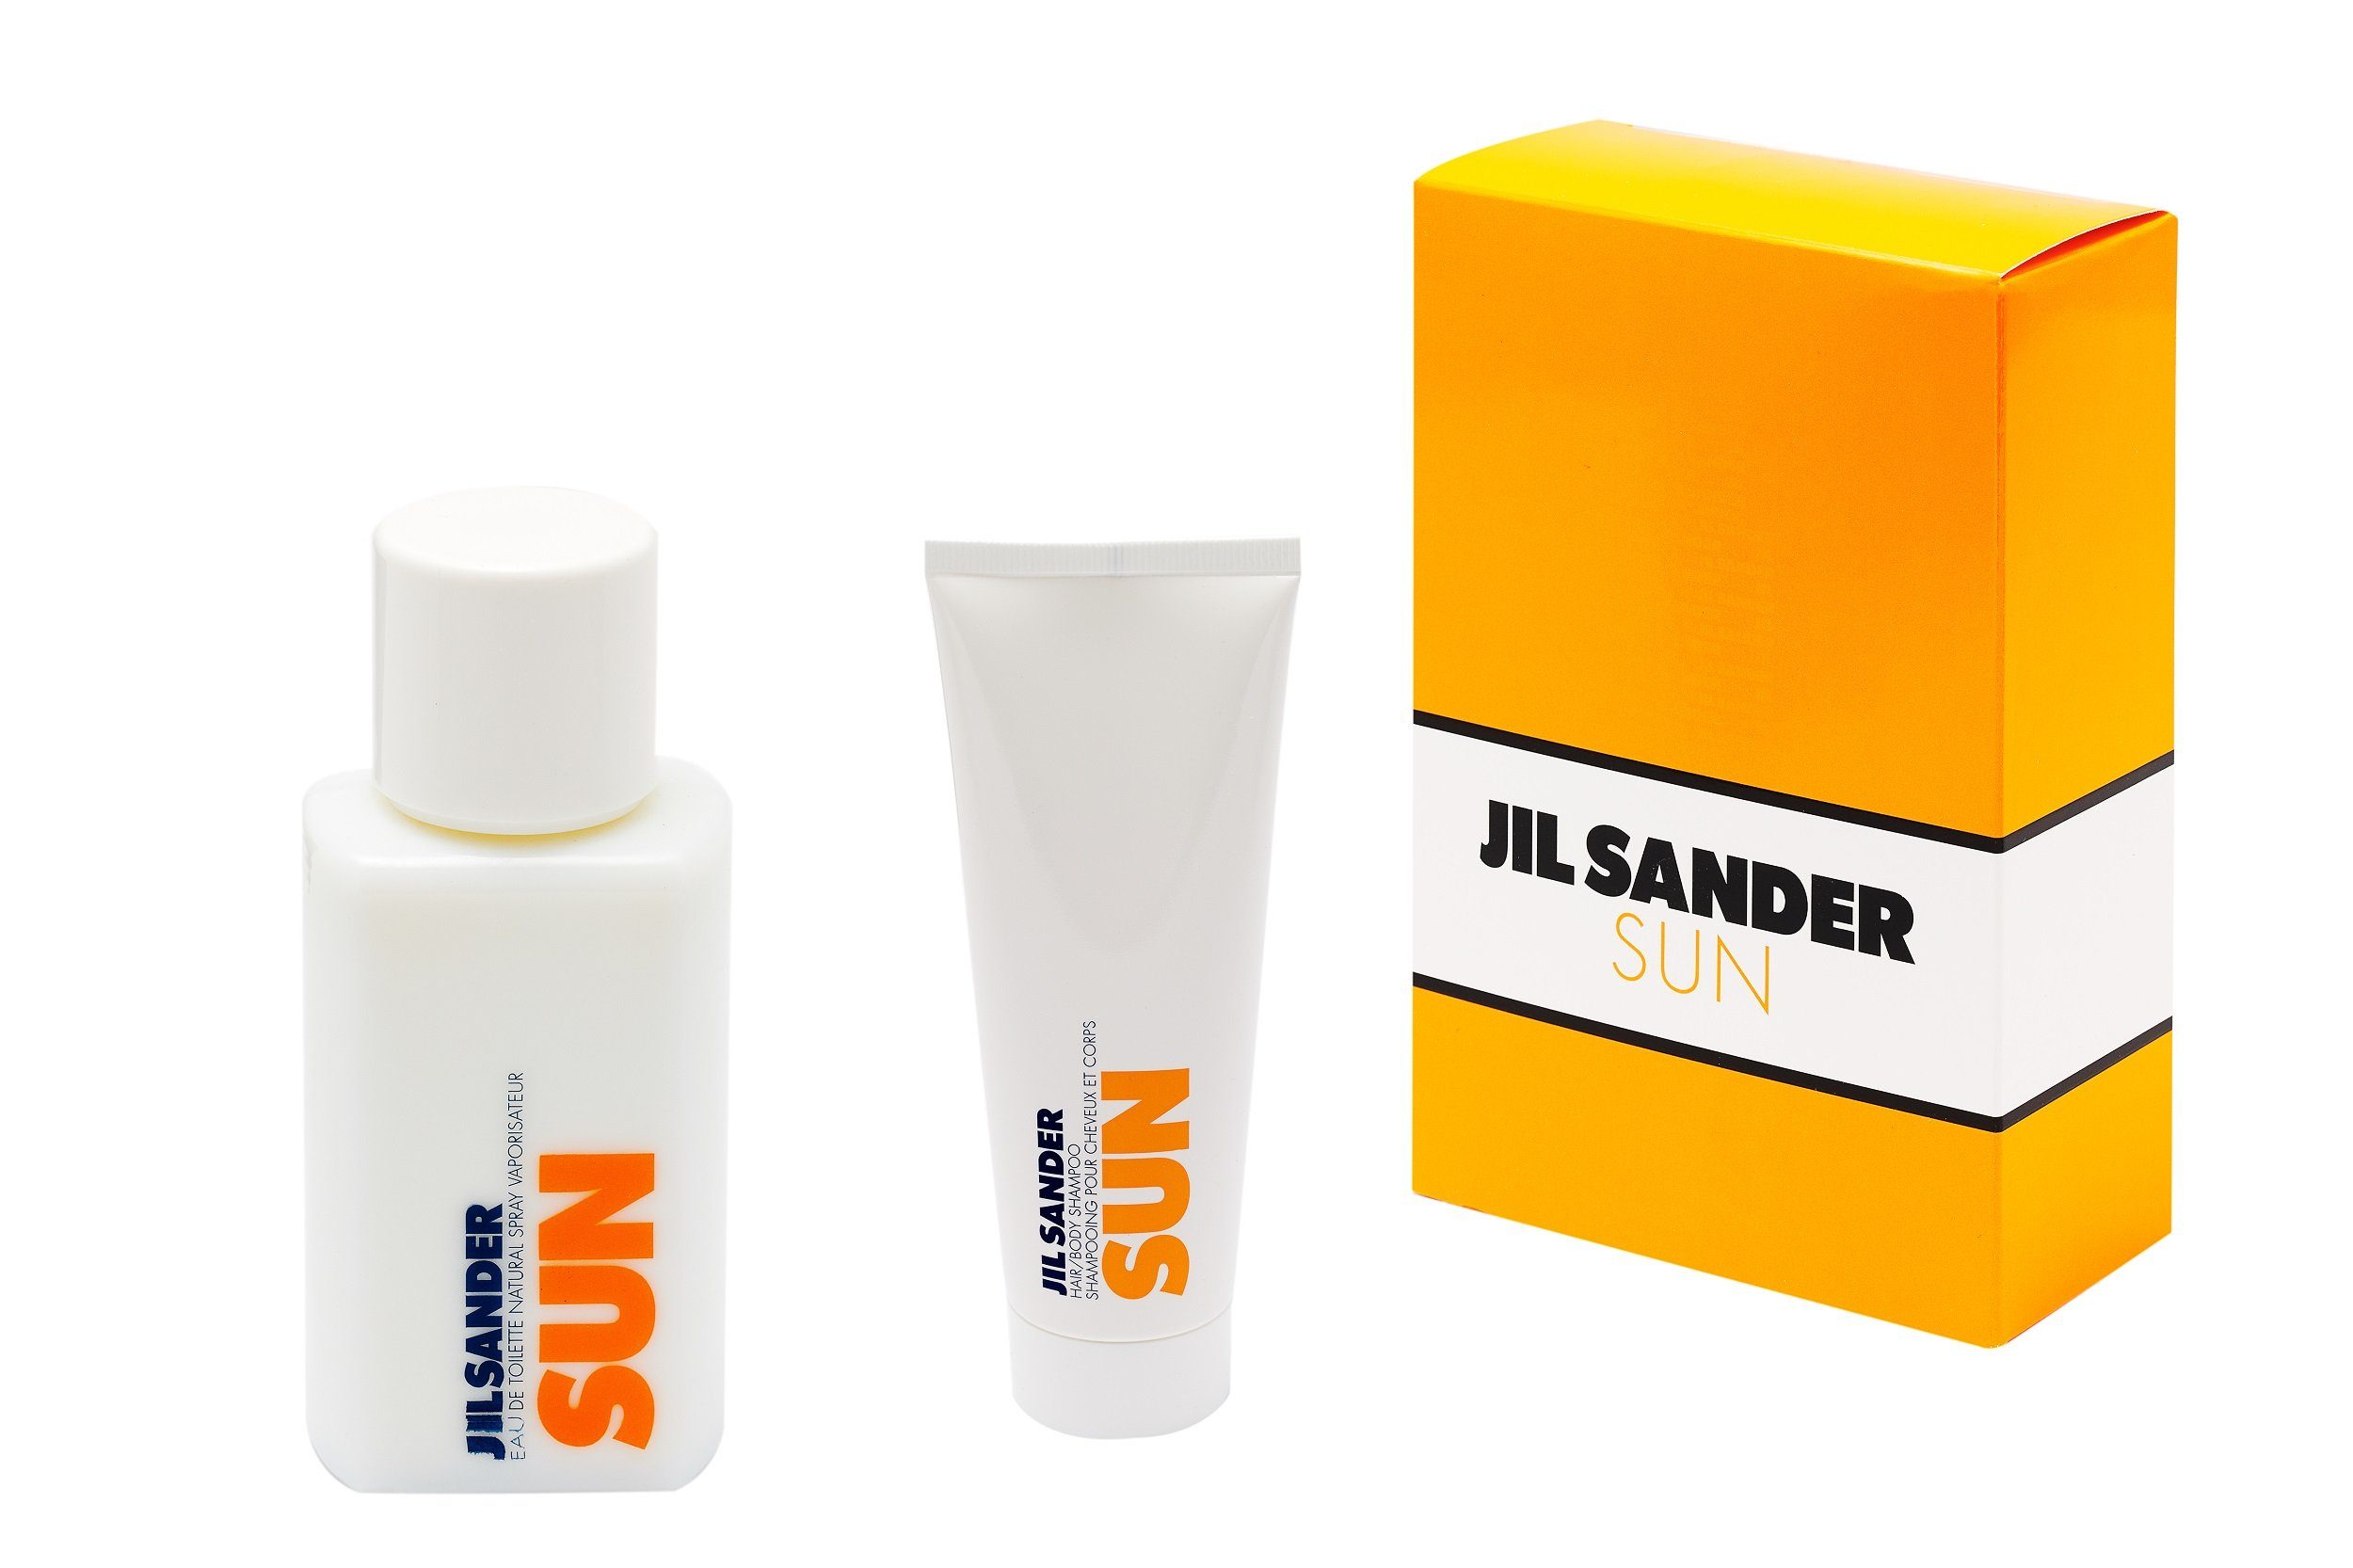 JIL SANDER Duft-Set Jil Sander Sun, 2-tlg. | Duft-Sets